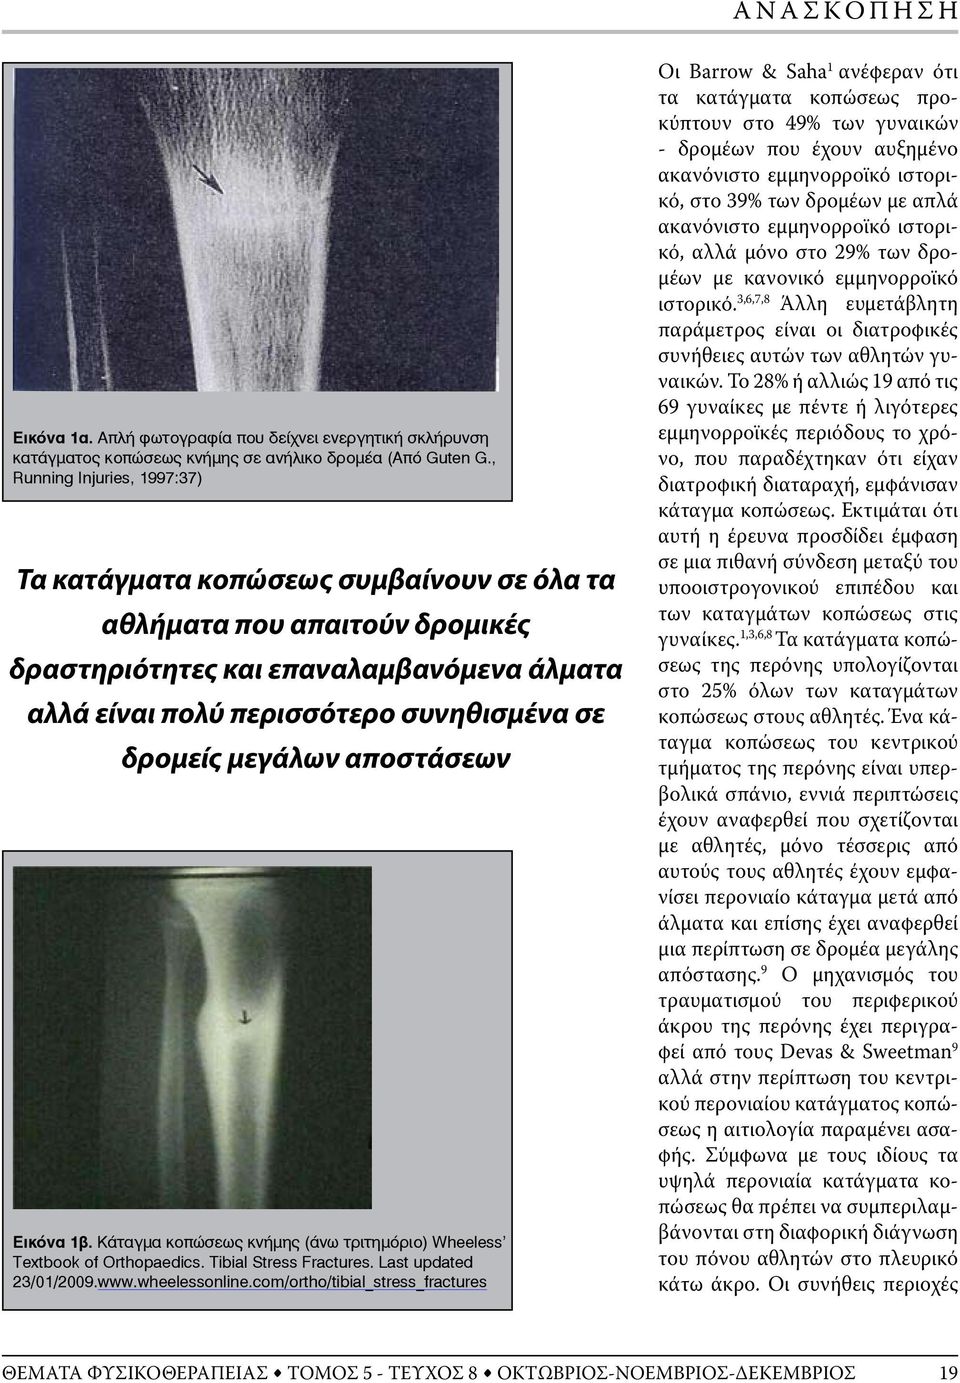 μεγάλων αποστάσεων Εικόνα 1β. Κάταγμα κοπώσεως κνήμης (άνω τριτημόριο) Wheeless Textbook of Orthopaedics. Tibial Stress Fractures. Last updated 23/01/2009.www.wheelessonline.